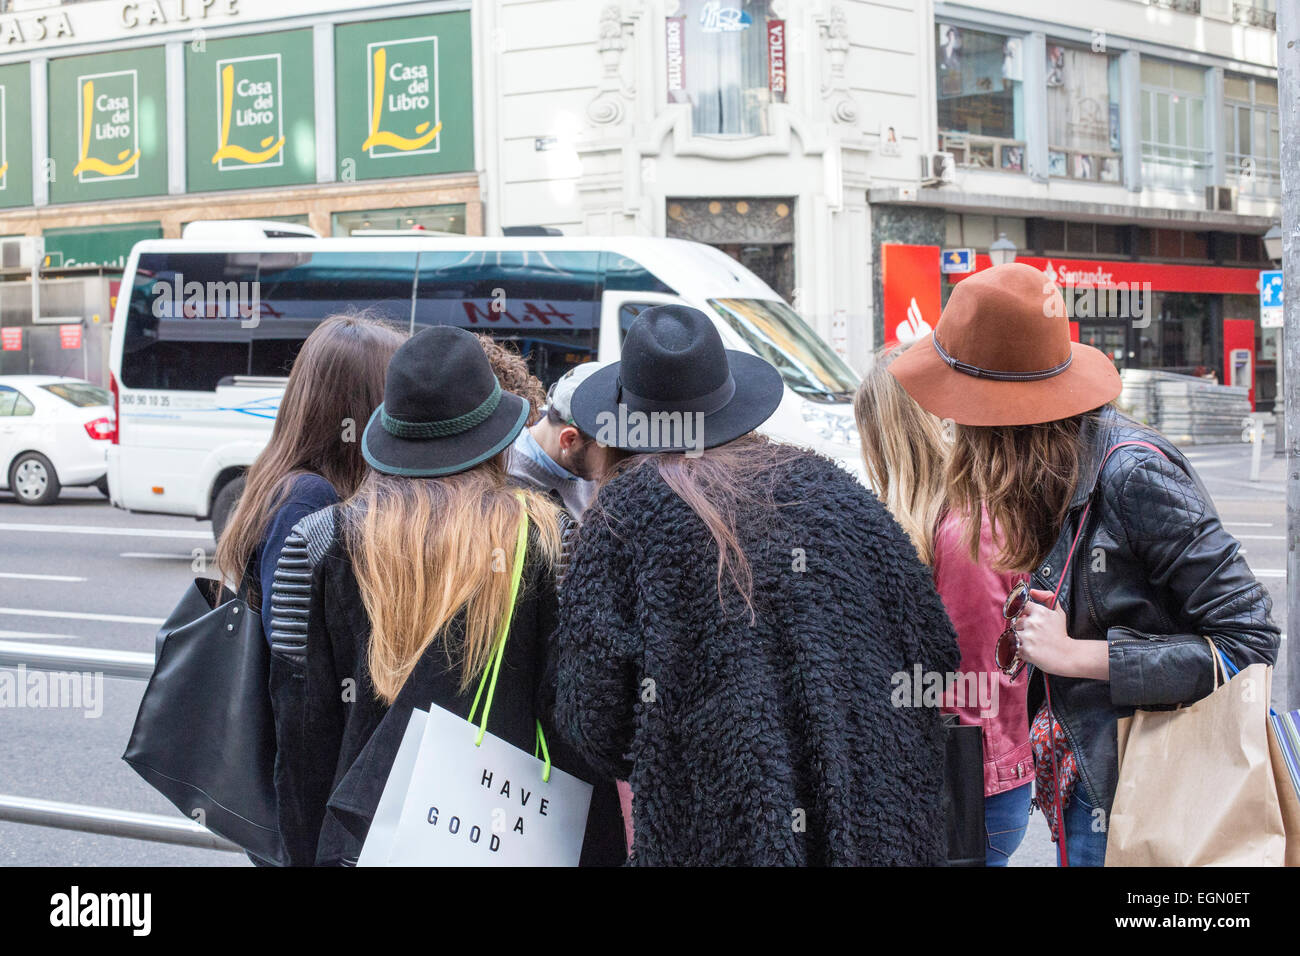 Las chicas del grupo de turistas compradores tiendas tienda de sombreros Foto de stock